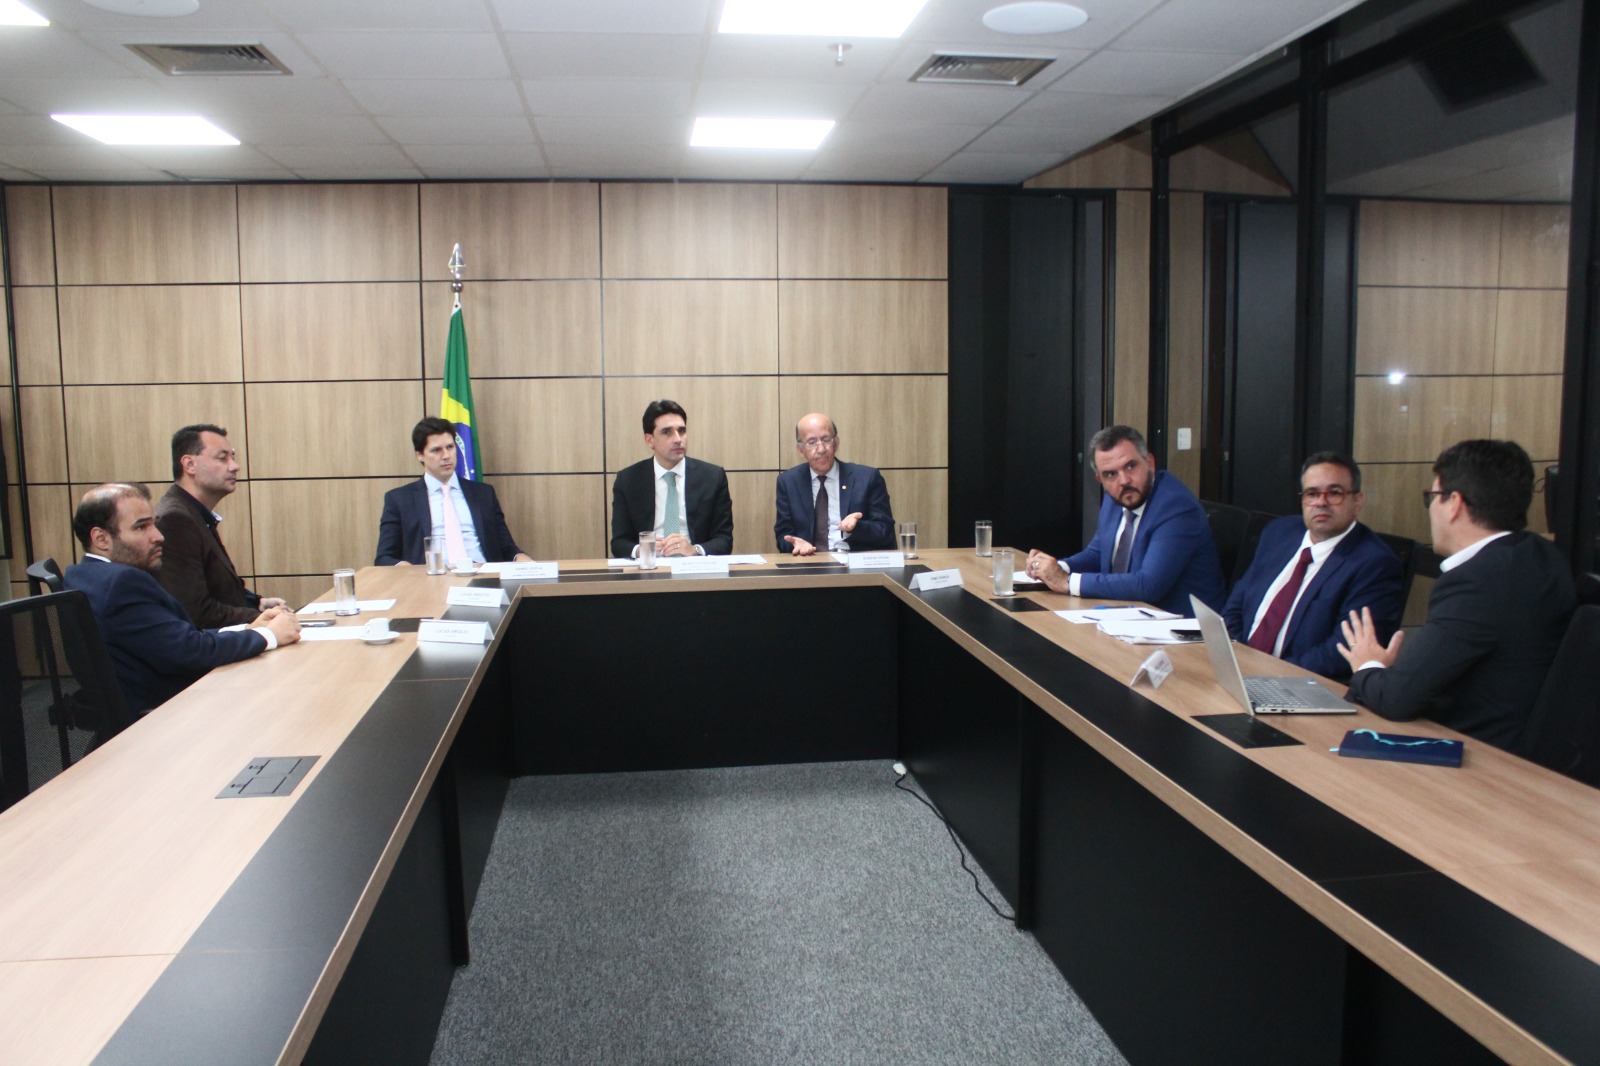  Vice-governador Daniel Vilela participa de reunião com ministro de Portos e Aeroportos, Silvio Costa Filho, para acelerar federalização do Aeroporto de Cargas de Anápolis